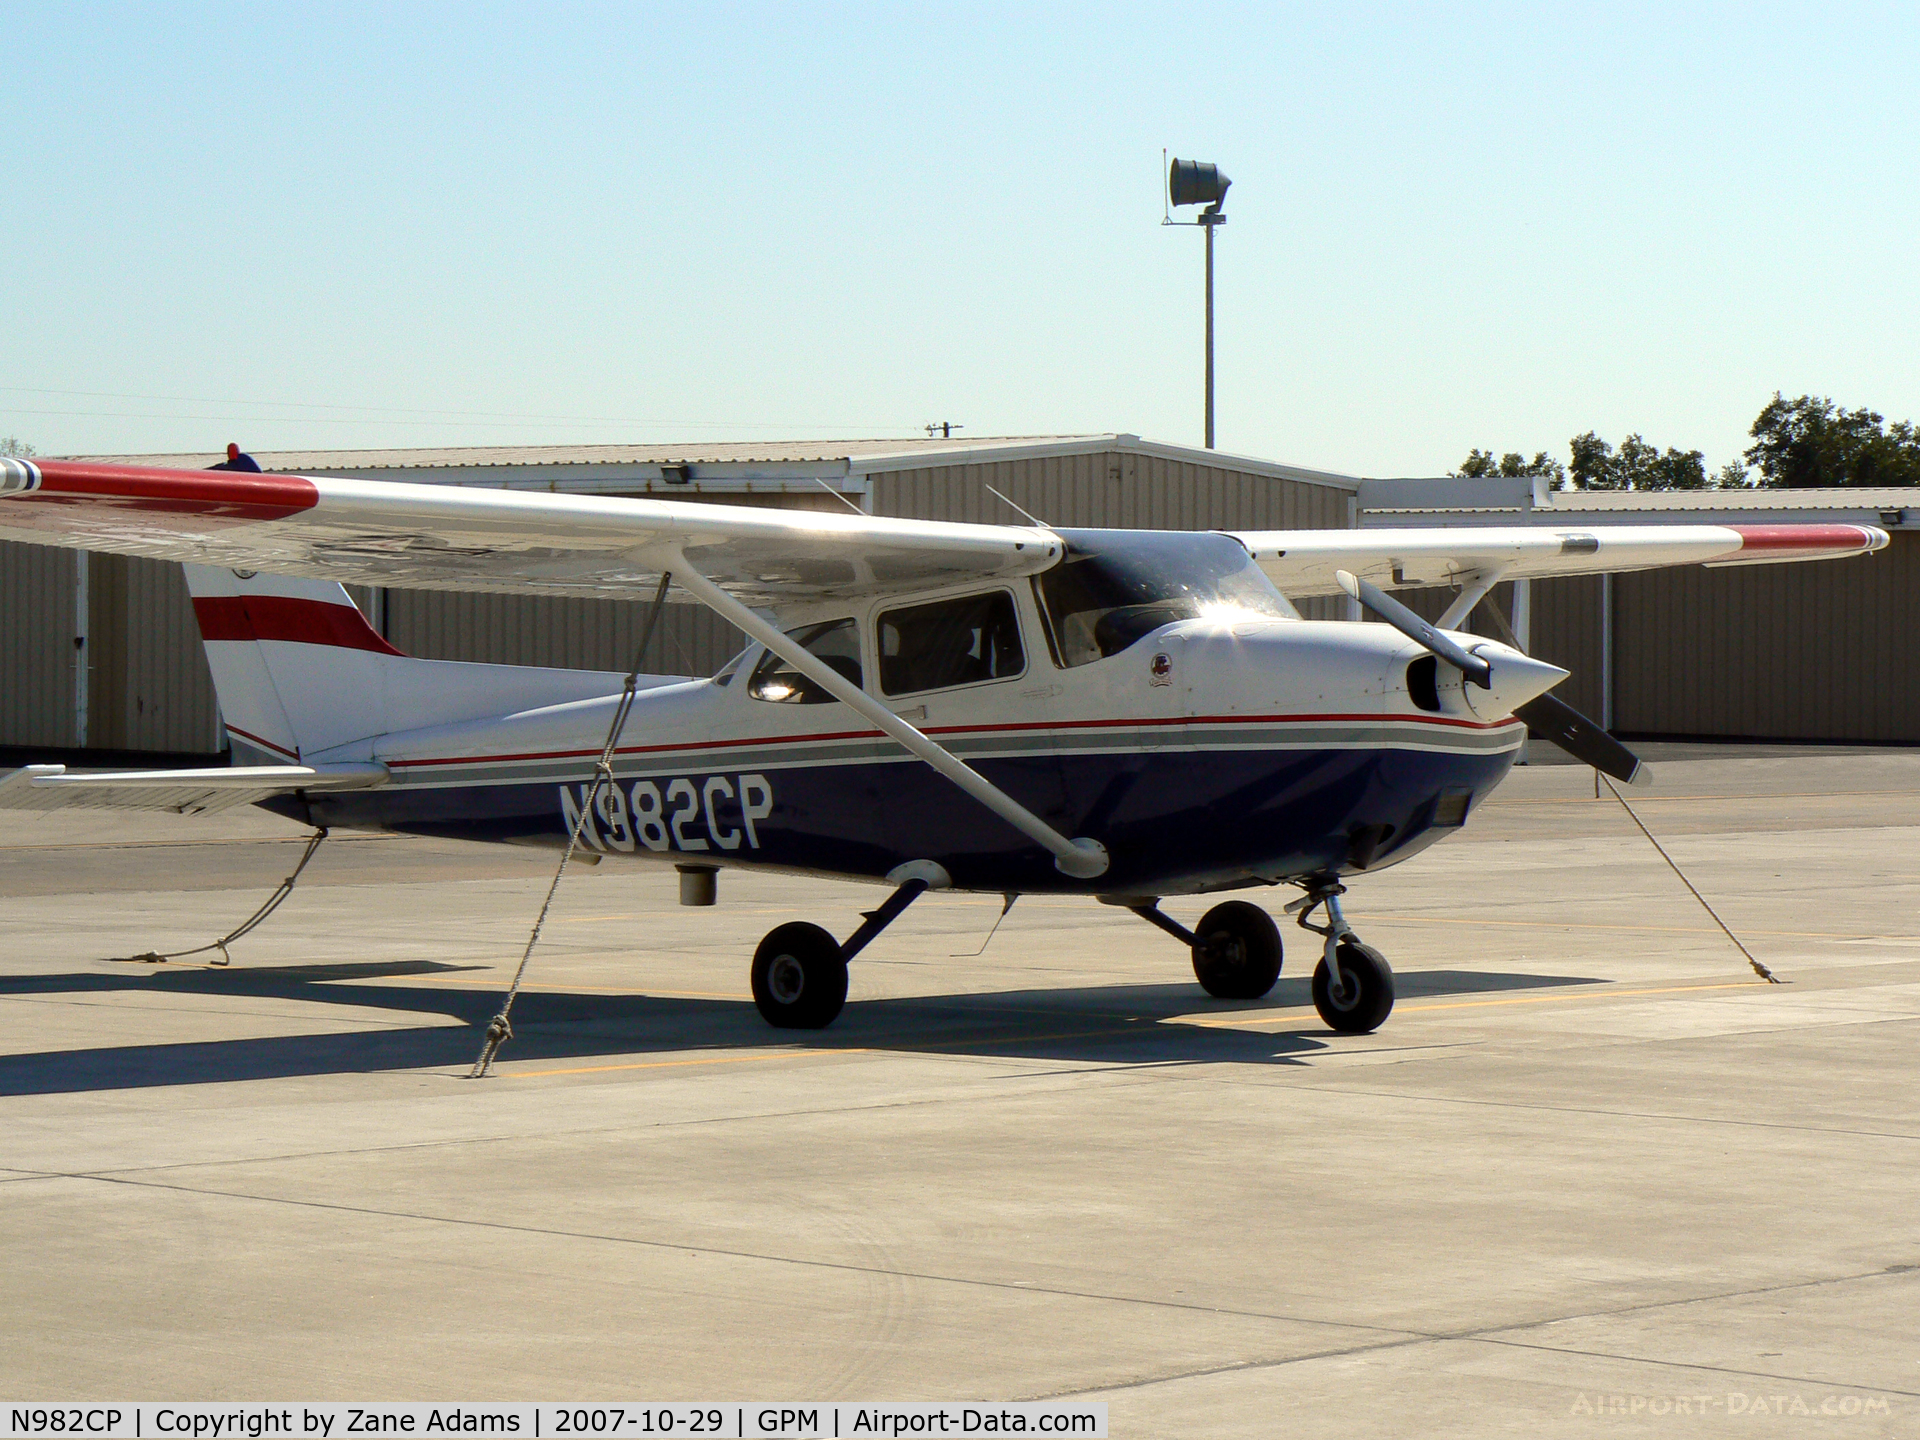 N982CP, 1997 Cessna 172R C/N 17280227, Civil Air Patrol 172 at Grand Prairie Muni